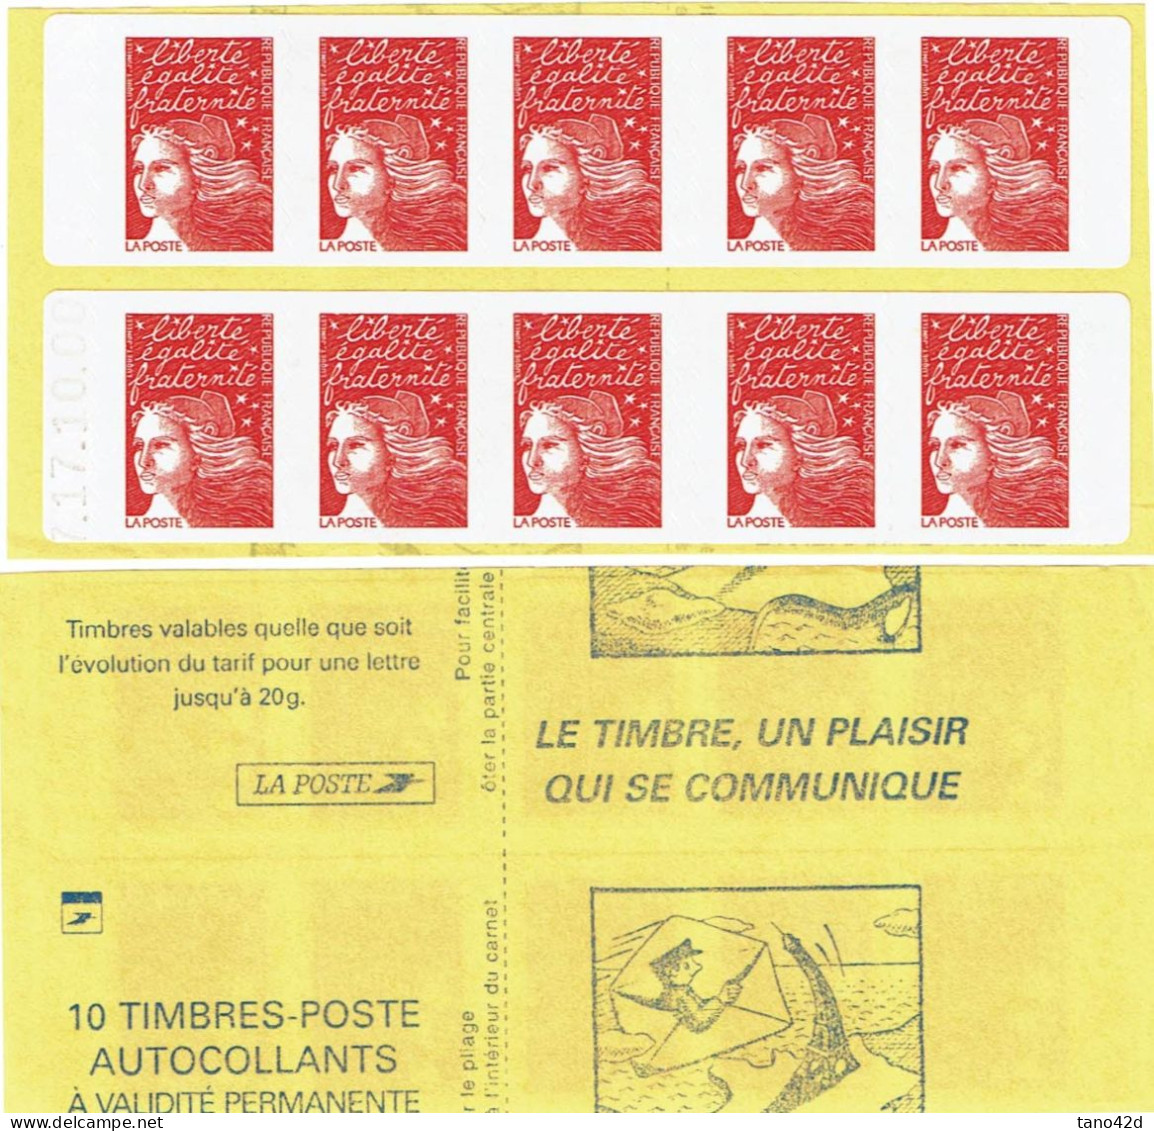 CARNETS DE FRANCE -  CARNET "MARIANNE DE LUQUET"  POUR SAGEM Y/T 3419-12 DATE 17.10.00  VARIETE DE DECOUPE - Moderni : 1959-…